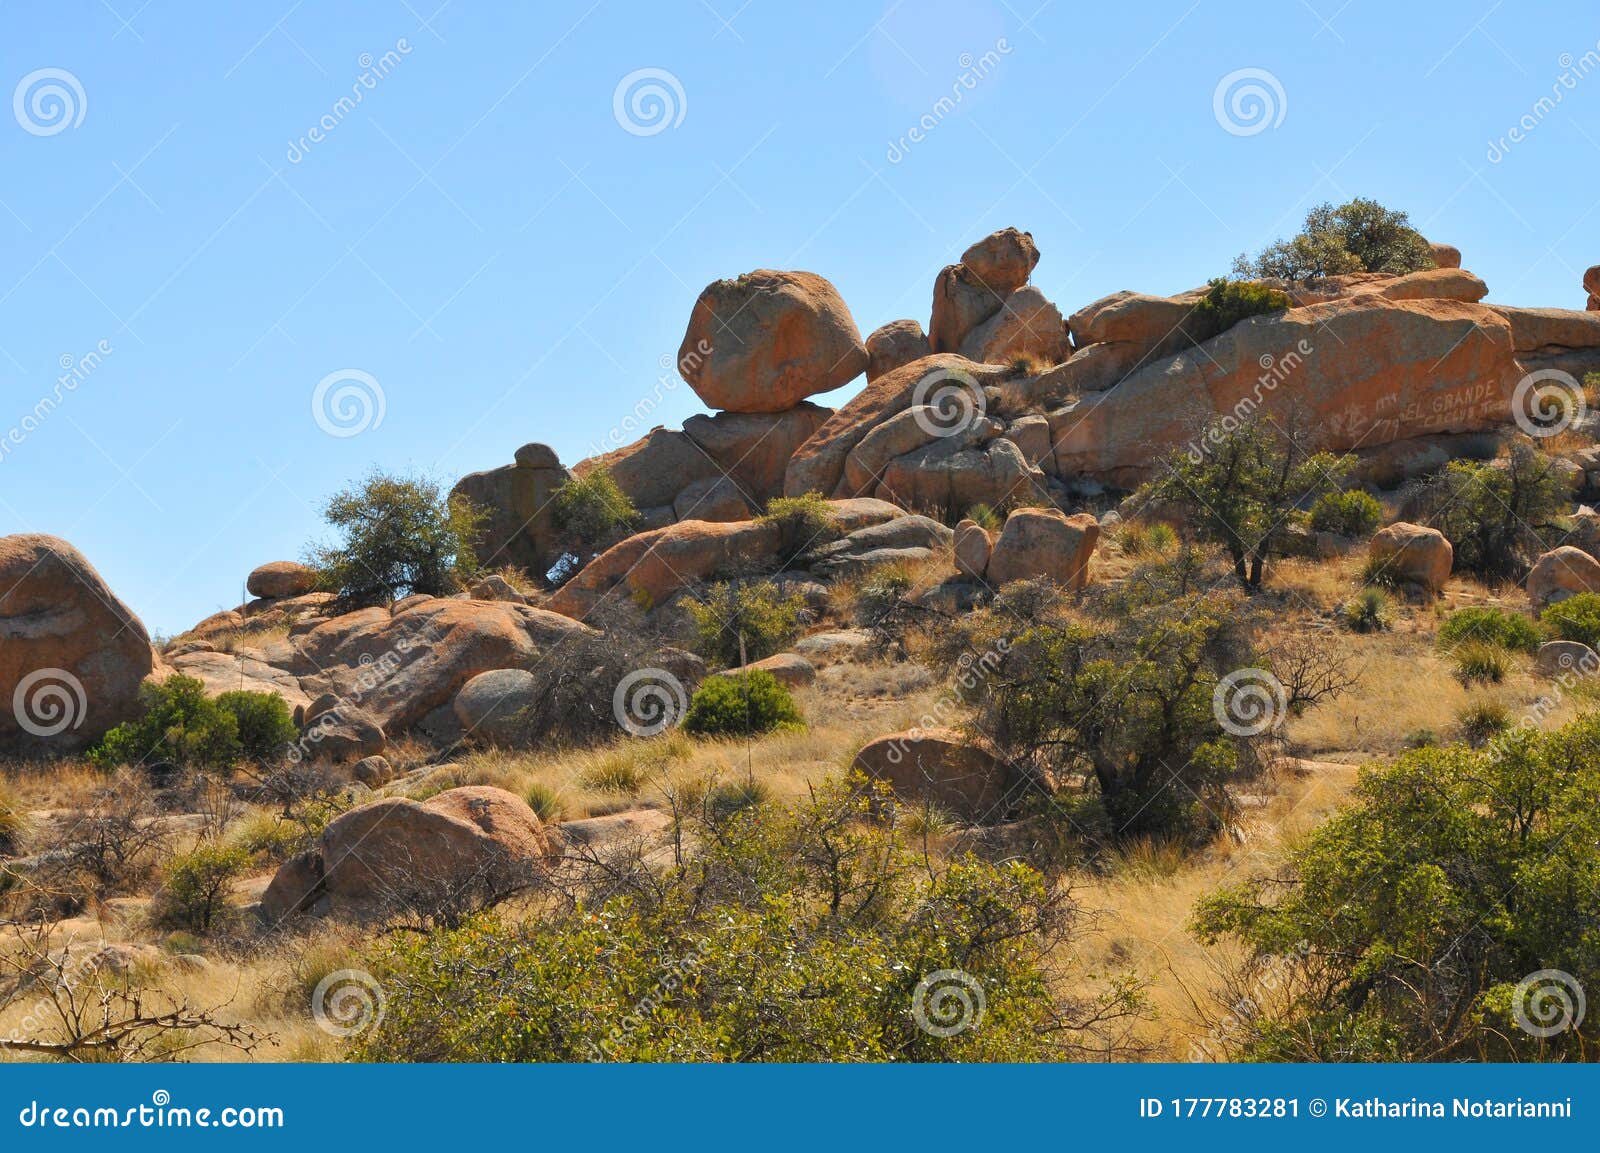 balance rock - desert terrain mountain rocks against a bright blue cloudless sky